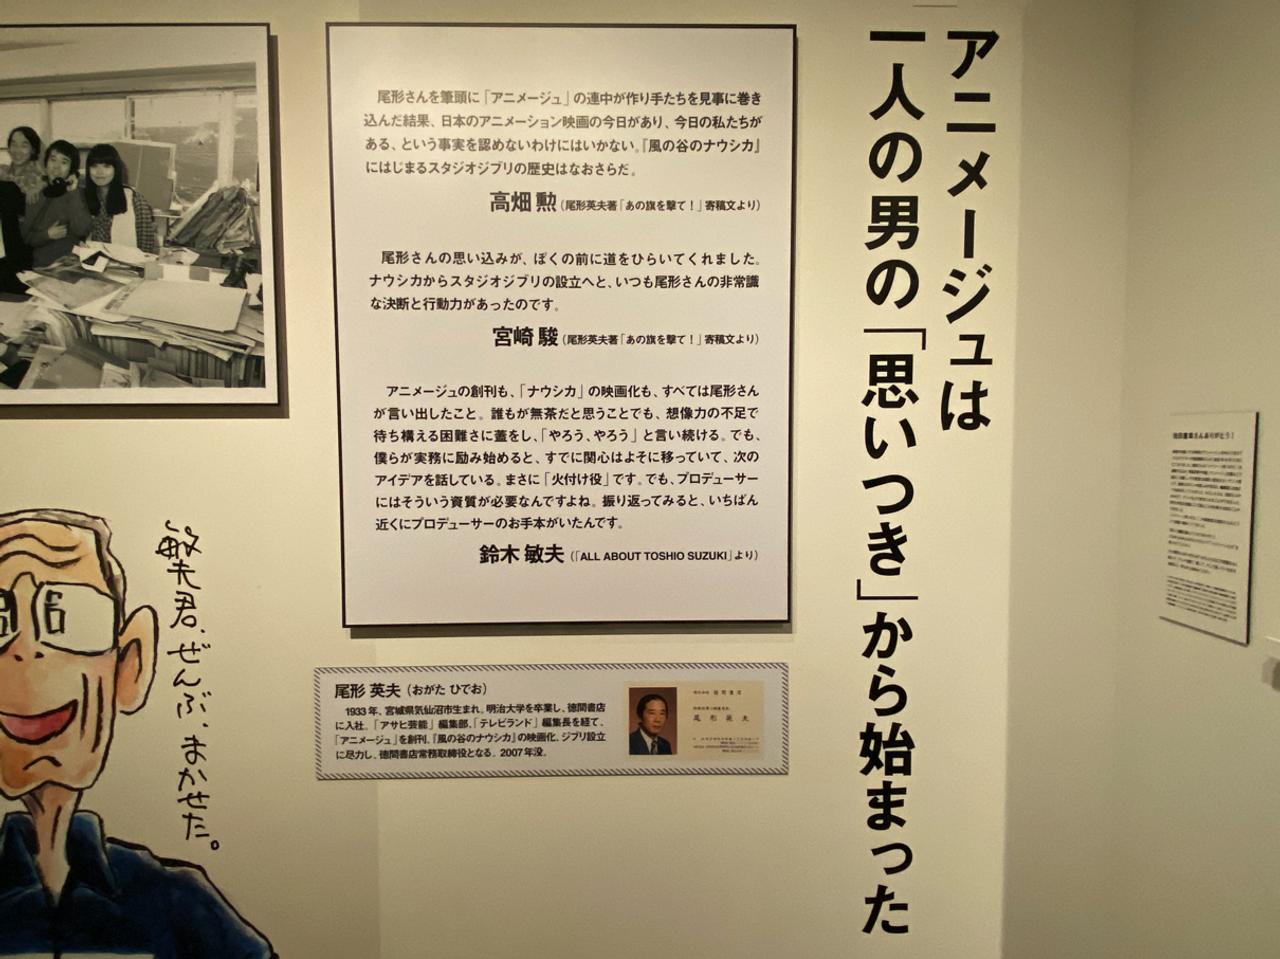 尾形英夫はスタジオジブリ設立にも尽力。徳間書店の常務取締役も務めた。2007年に胃がんで亡くなった。（C）Studio Ghibli